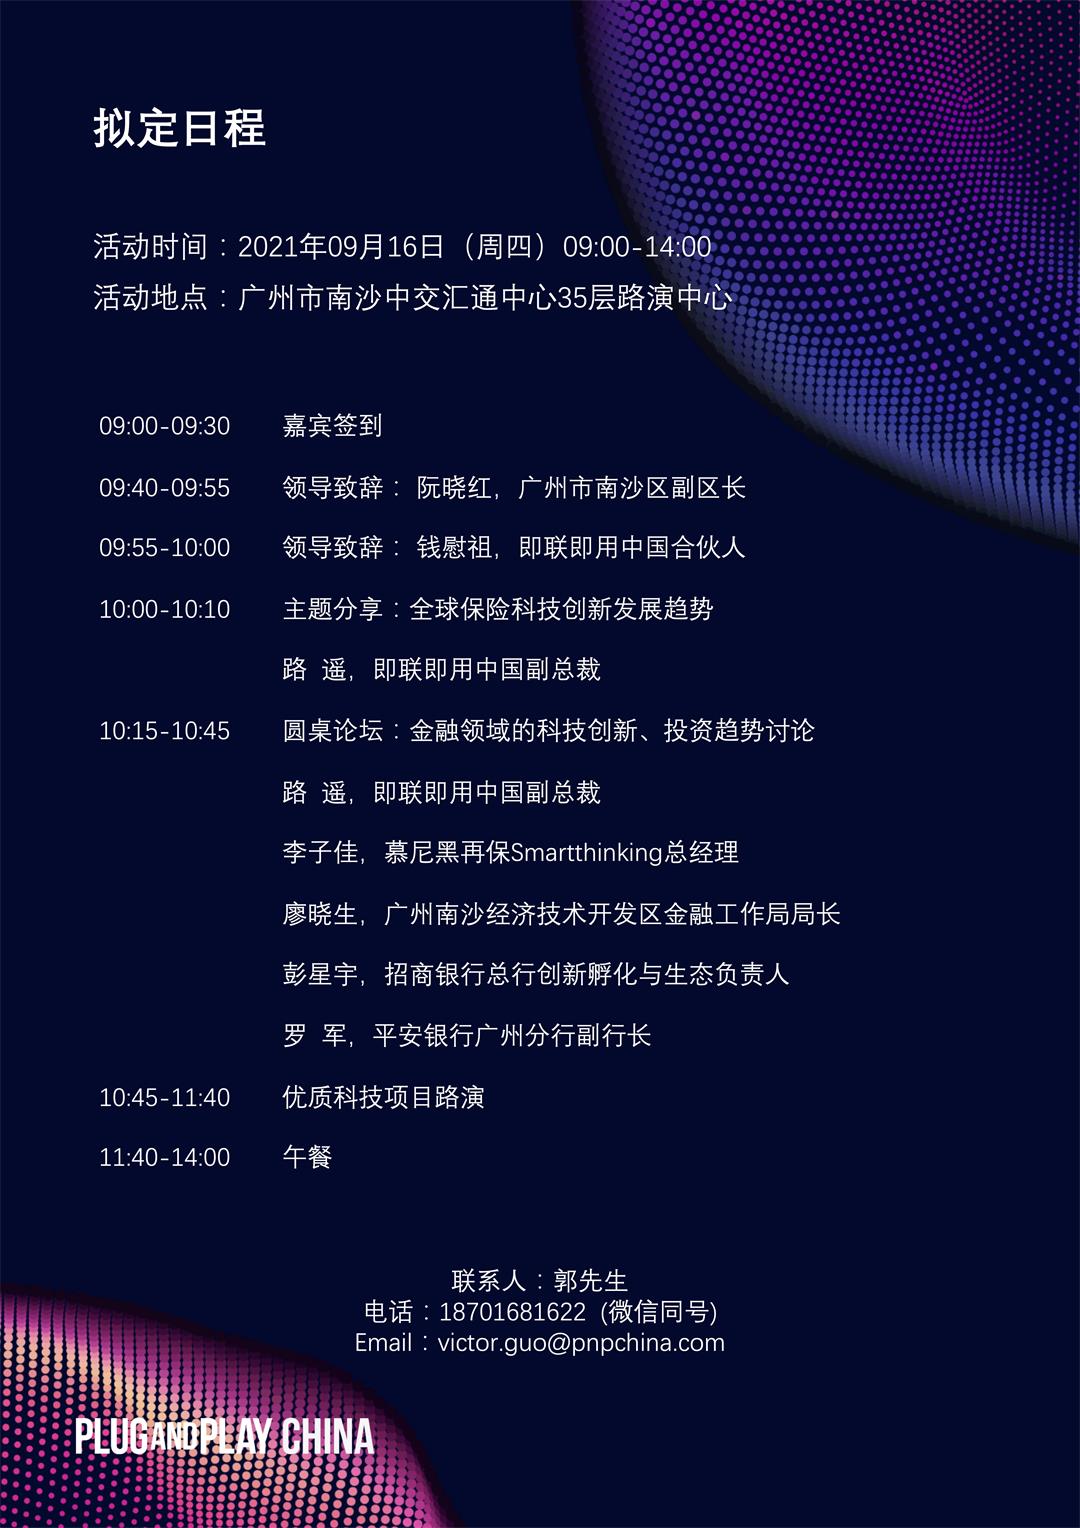 2邀请函：9.16 PNP 广州金融+产业创新中心暨金融创新论坛活动.jpg